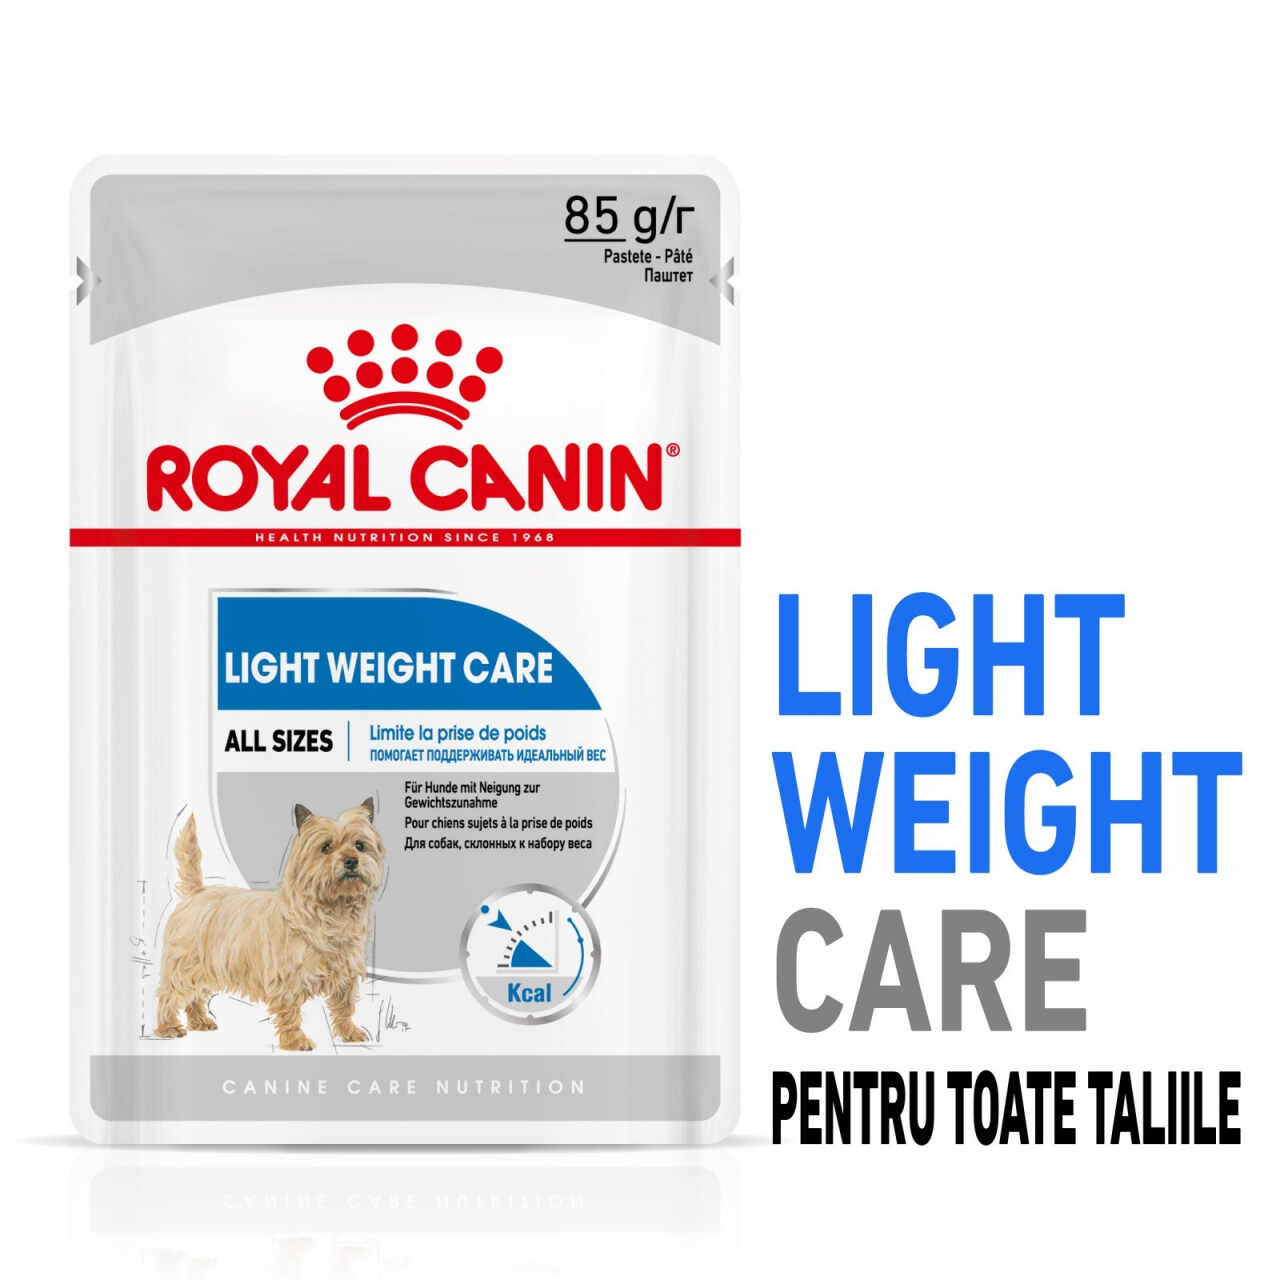 Royal Canin Light Weight Care Adult hrană umedă câine, limitarea creșterii în greutate (pate), 12 x 85g